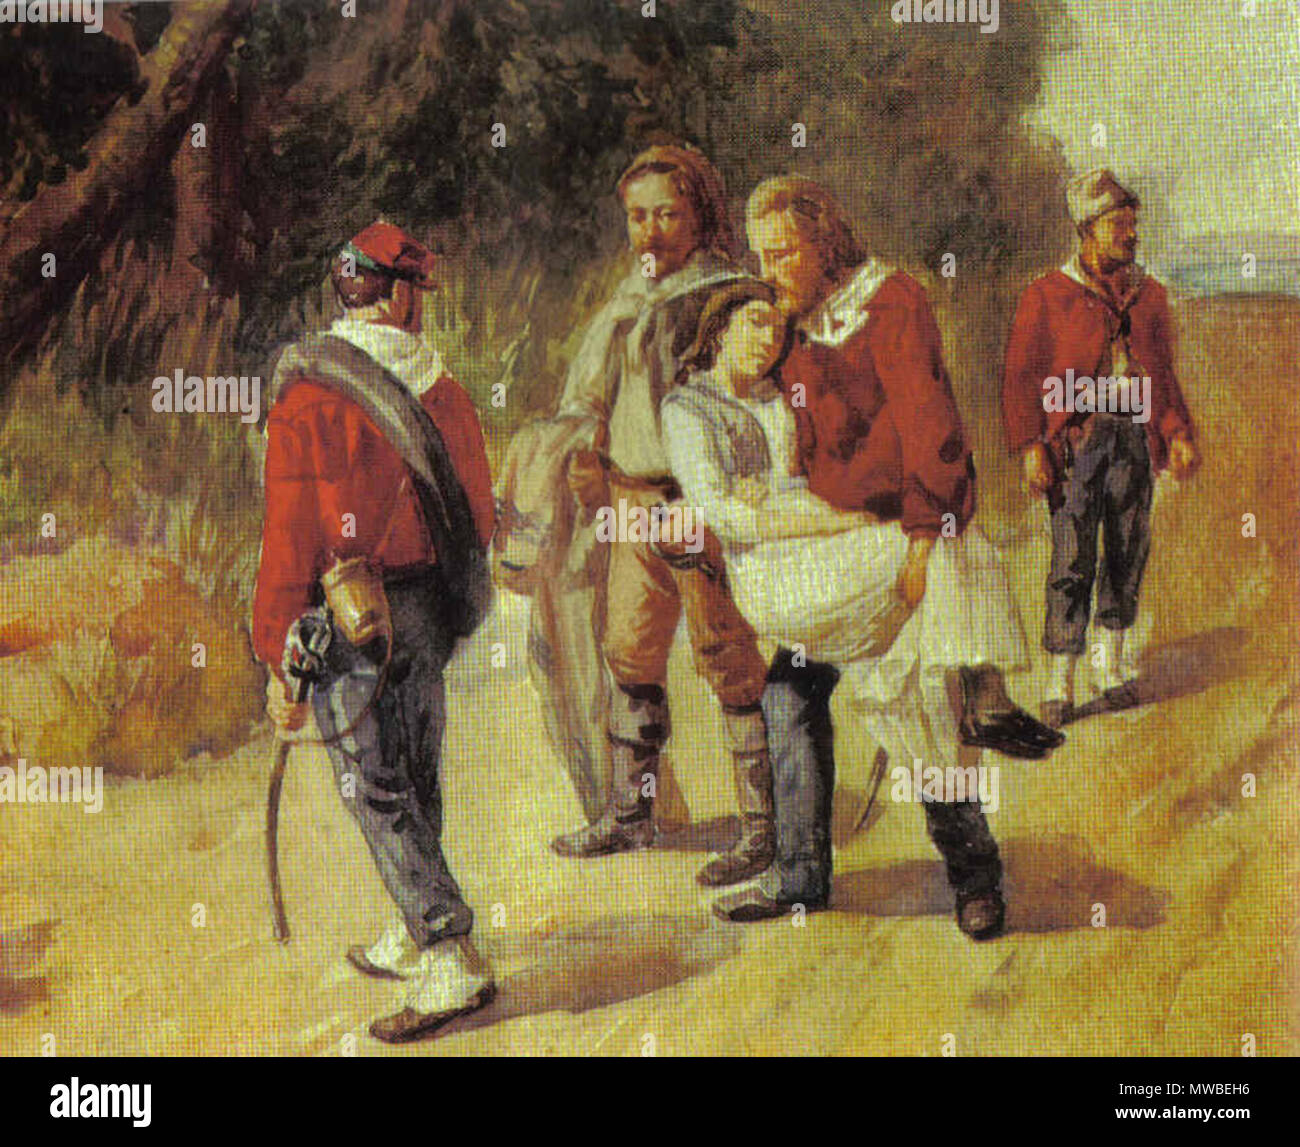 . Italienische Revolutionär Giuseppe Garibaldi und seine sterbenden Begleiter Anita Garibaldi Flucht aus San Marino 1849 234 Garbaldieanita Stockfoto